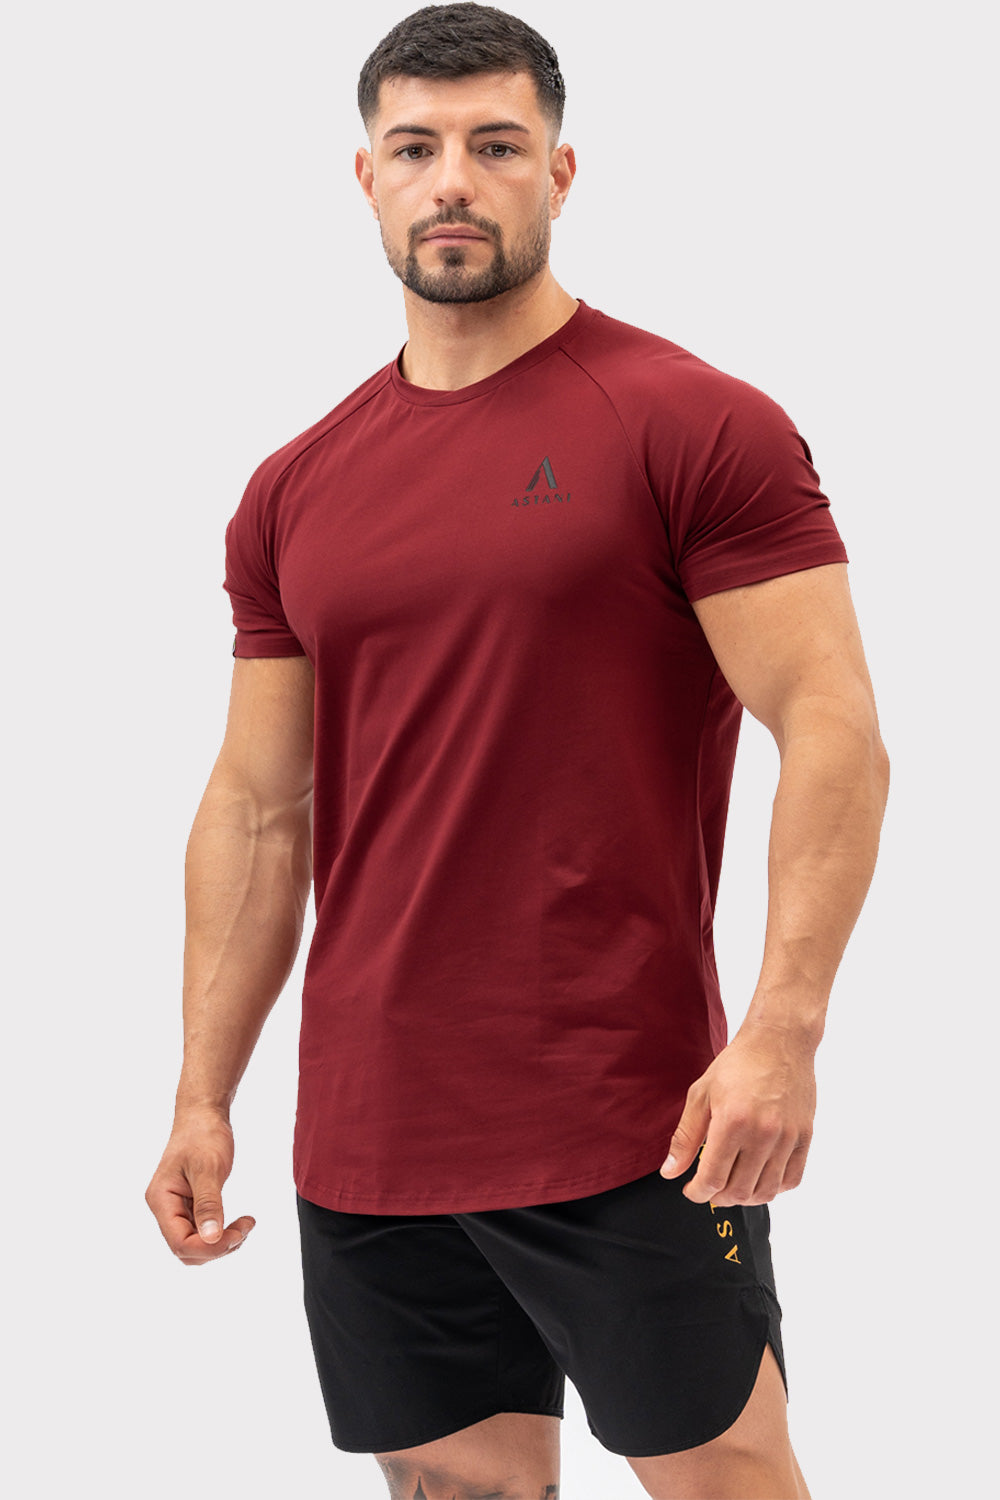 A CODE T-Shirt - Bordó